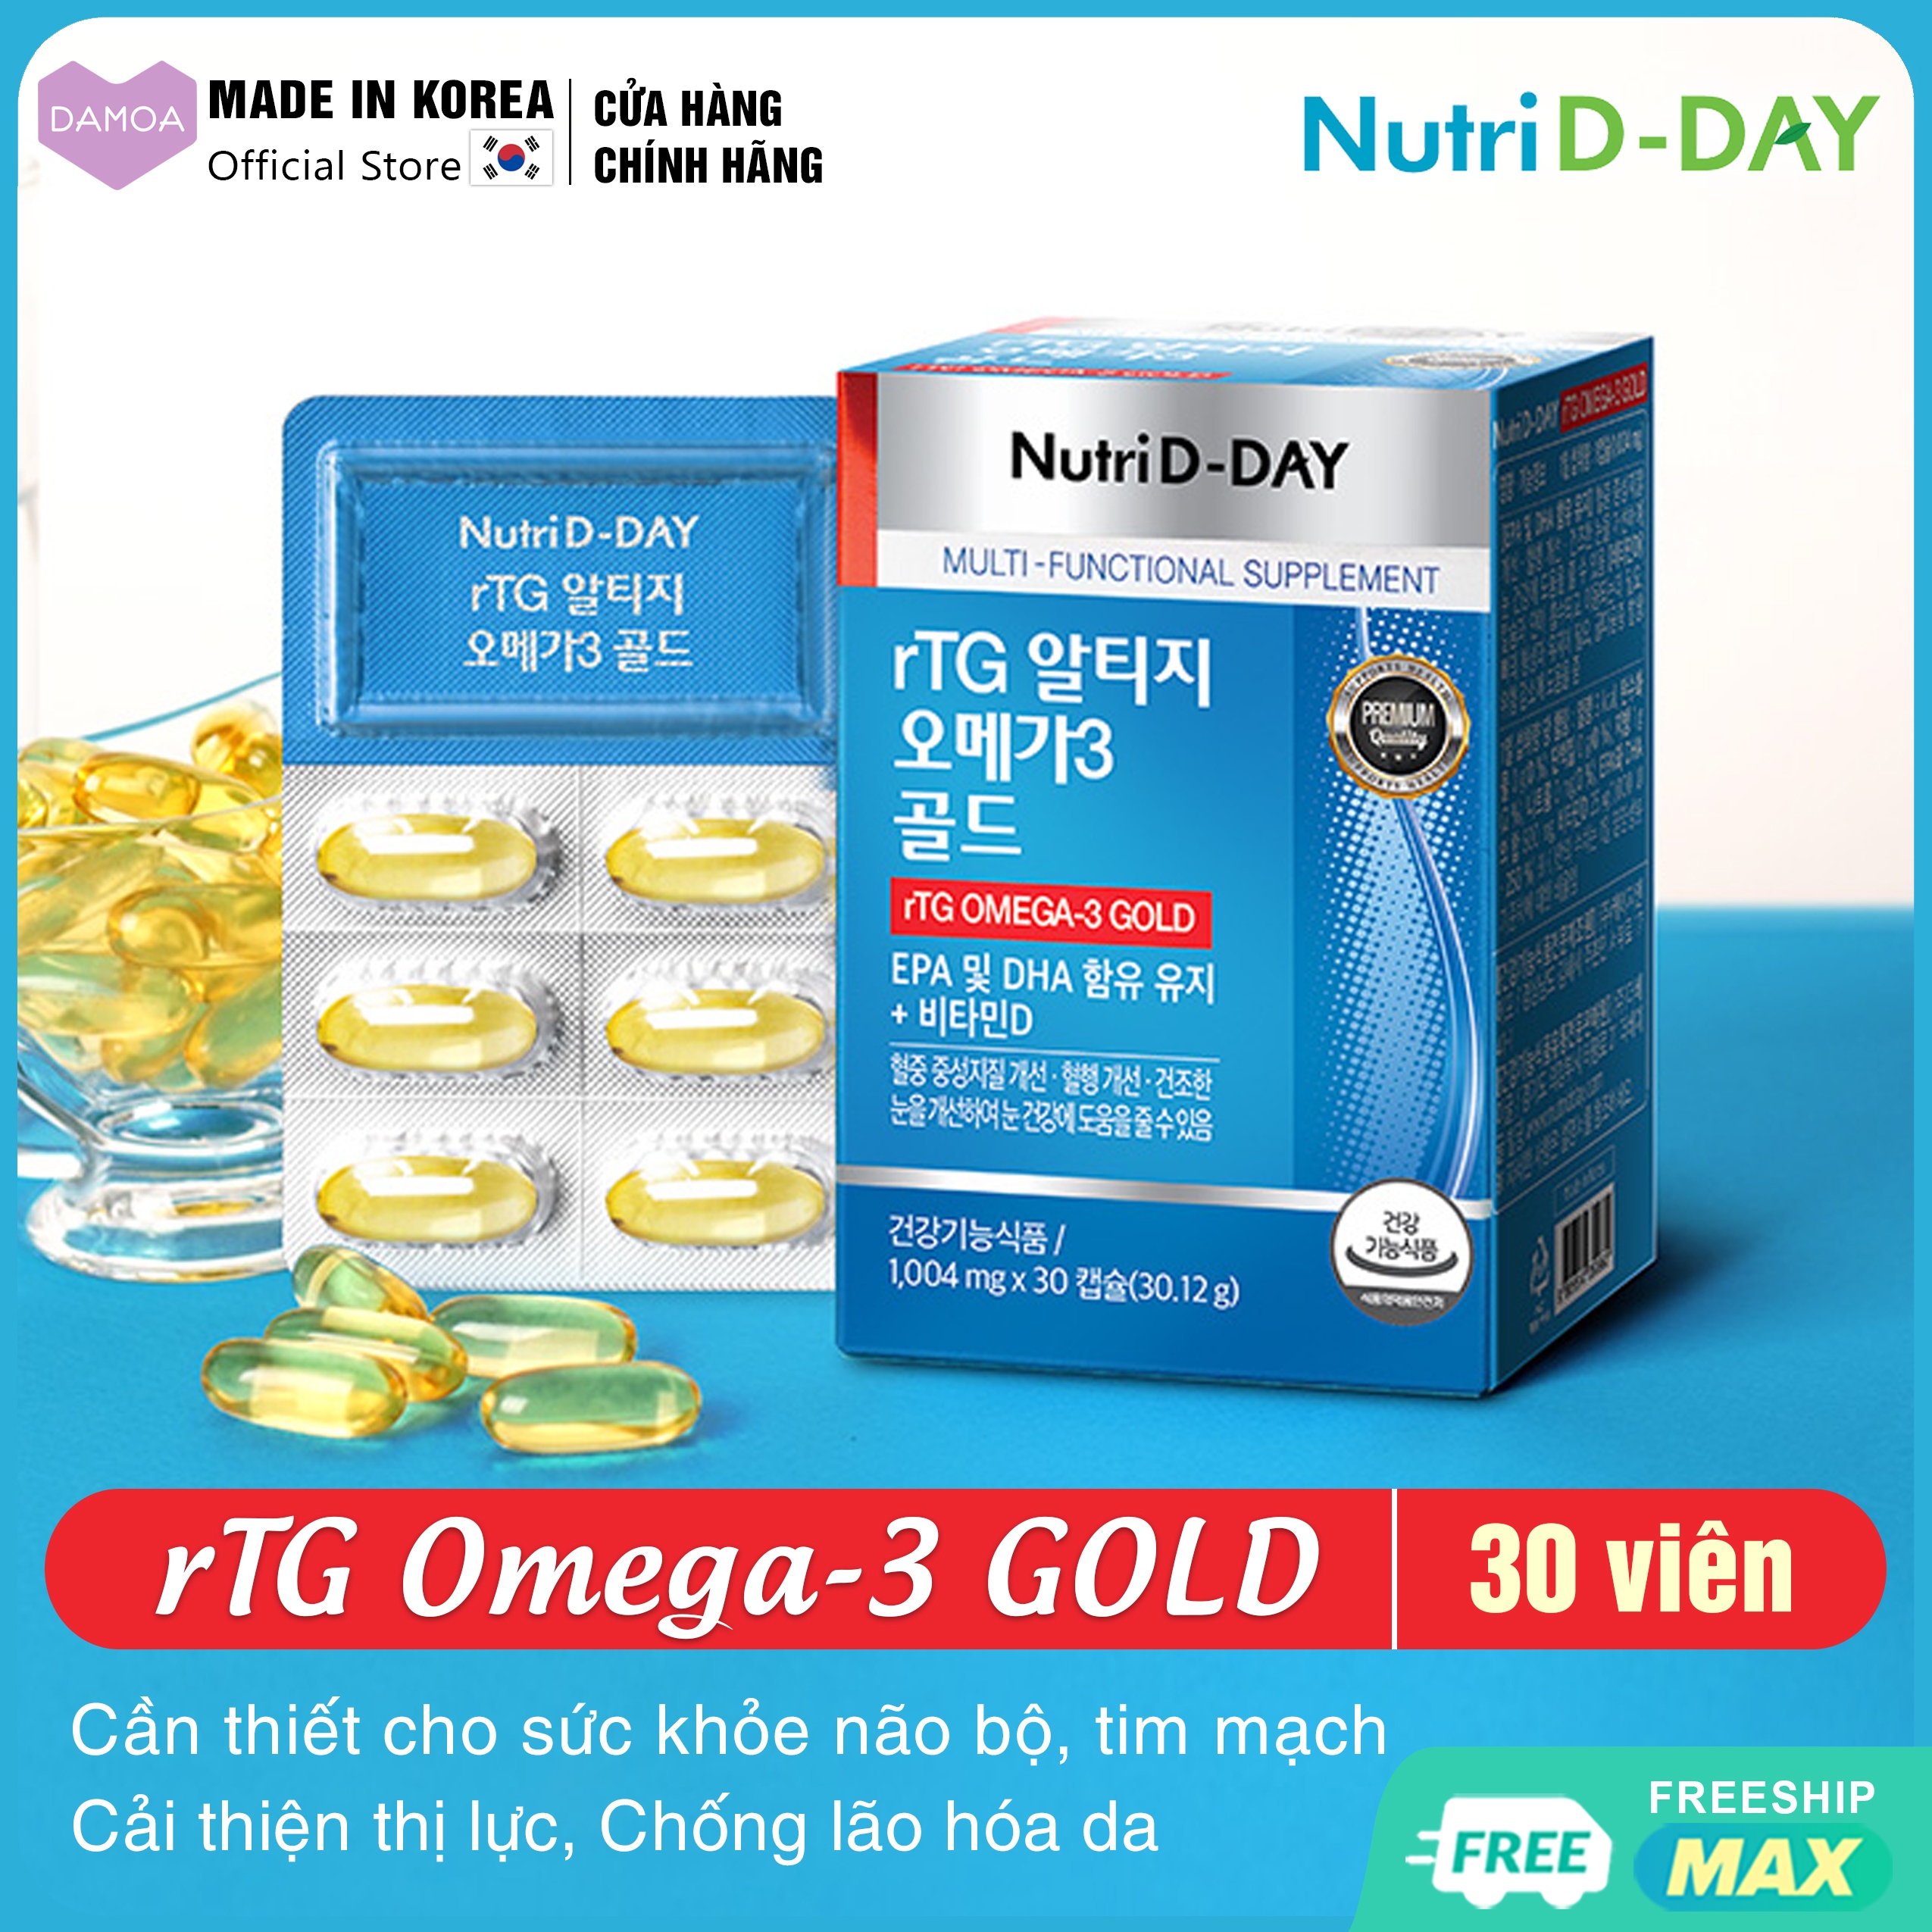 Box of 30 capsules rTG Omega-3 GOLD NUTRI D-DAY Korea EPA, DHA